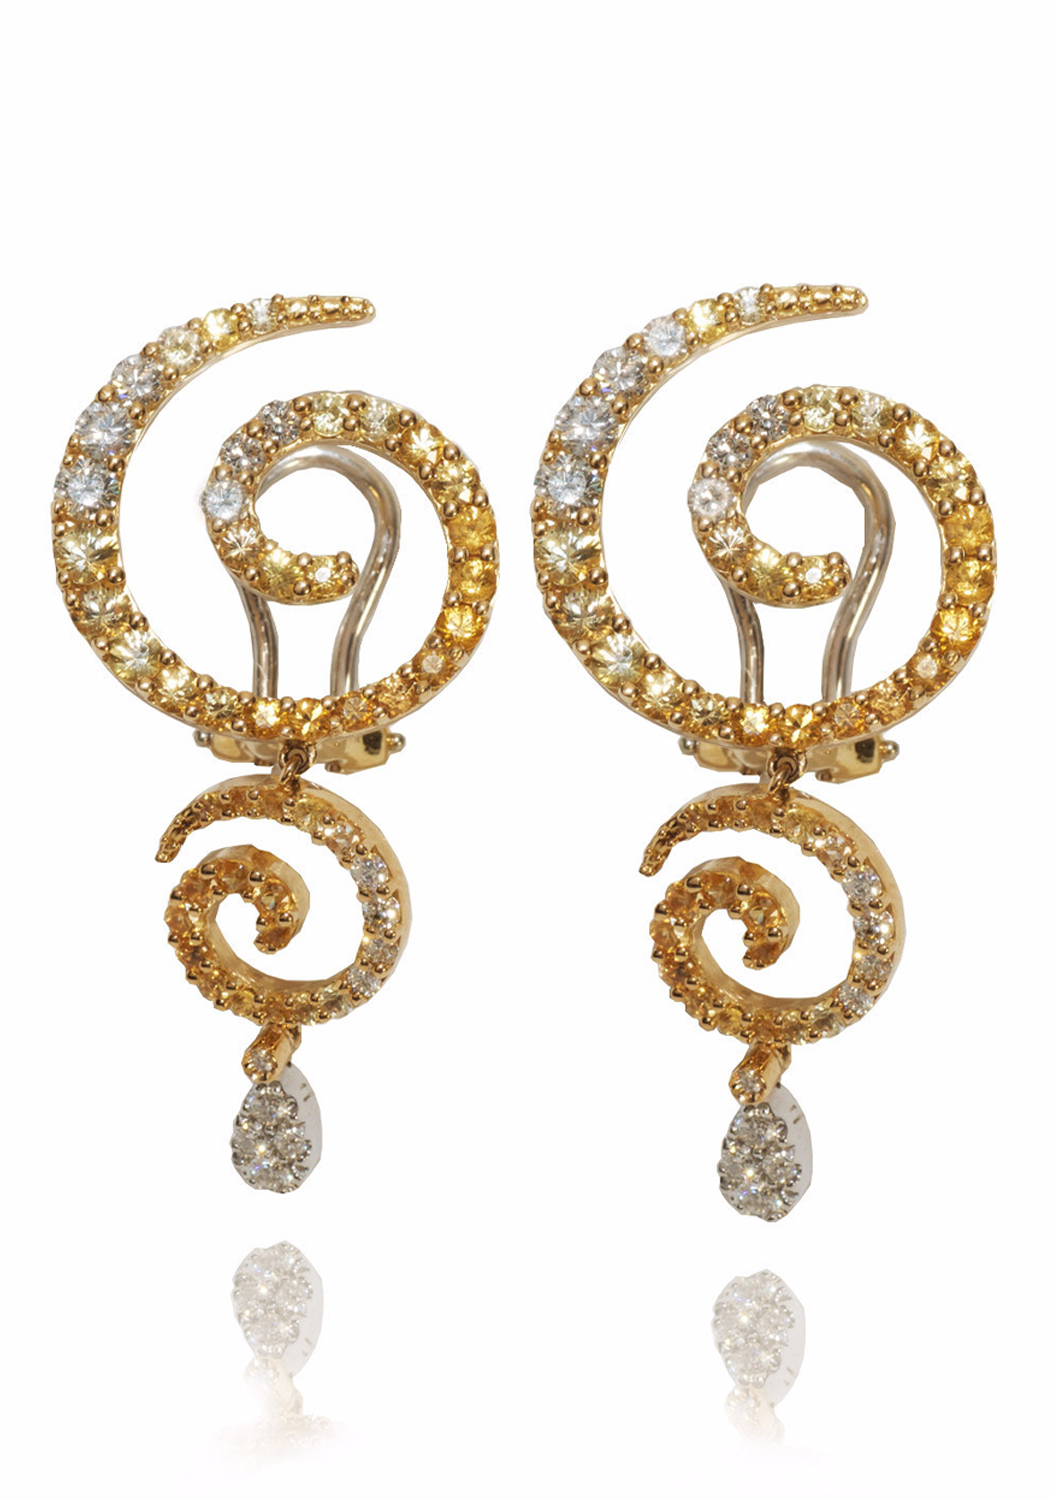 Stefan Hafner Diamond & Orange Sapphire Swirl Drop Earrings | OsterJewelers.com